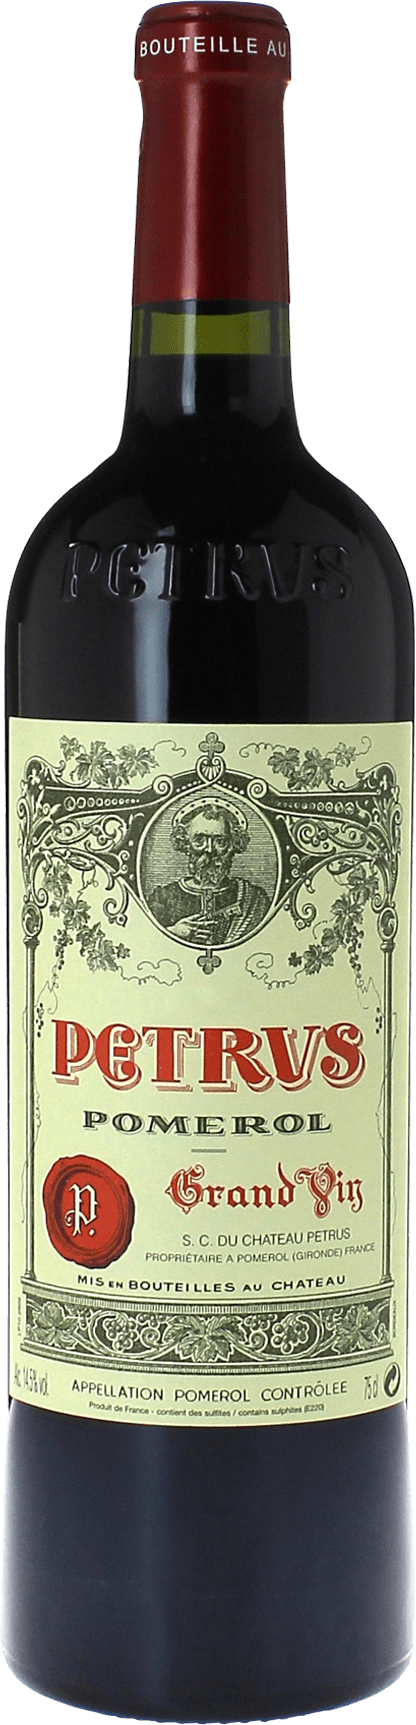 Petrus 1978  Pomerol, Bordeaux rouge